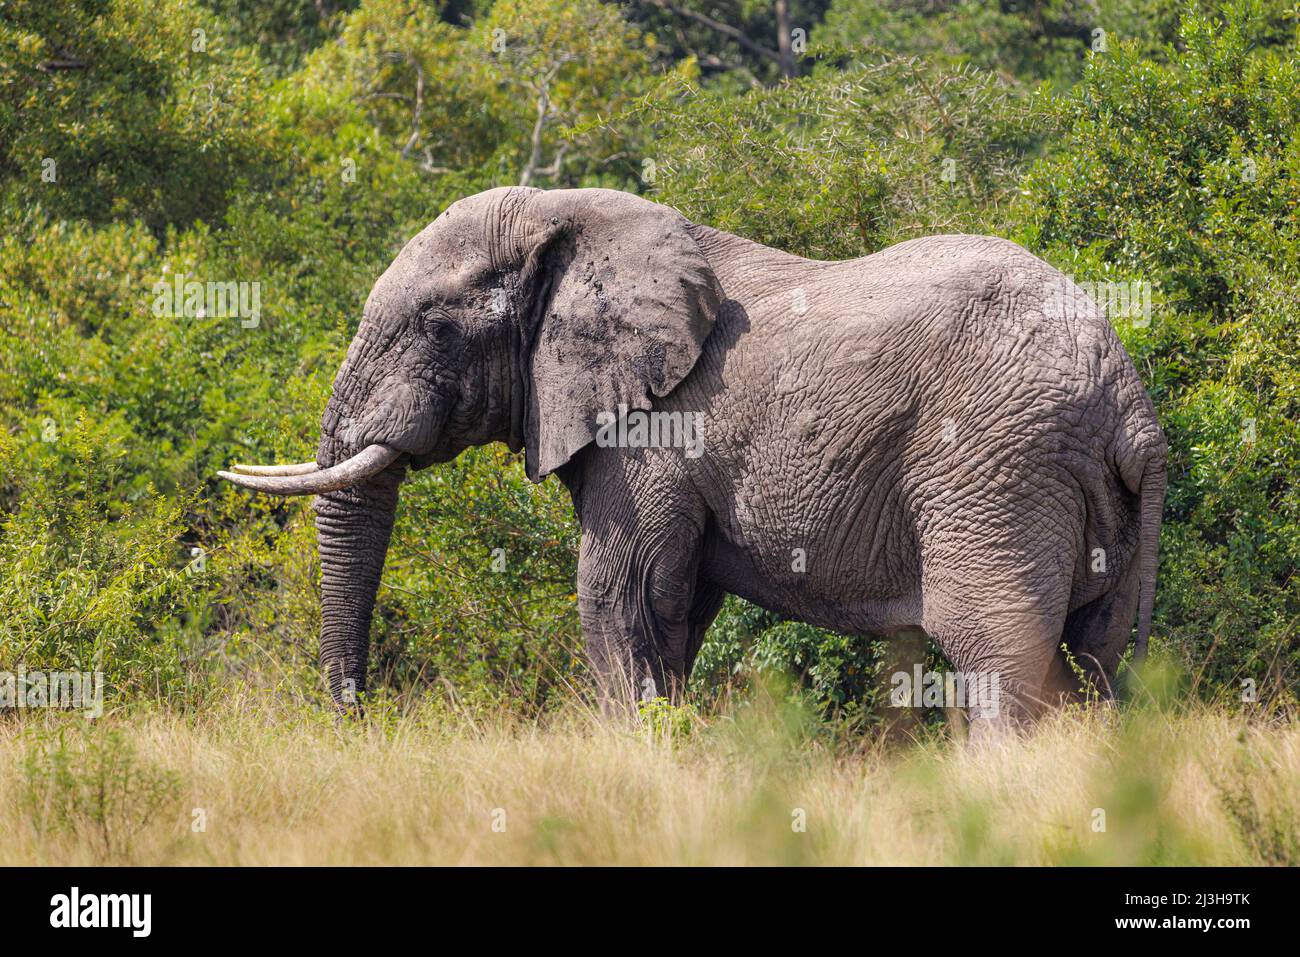 Uganda, Rubirizi district, Katunguru, Queen Elizabeth National Park, savannah elephant Stock Photo